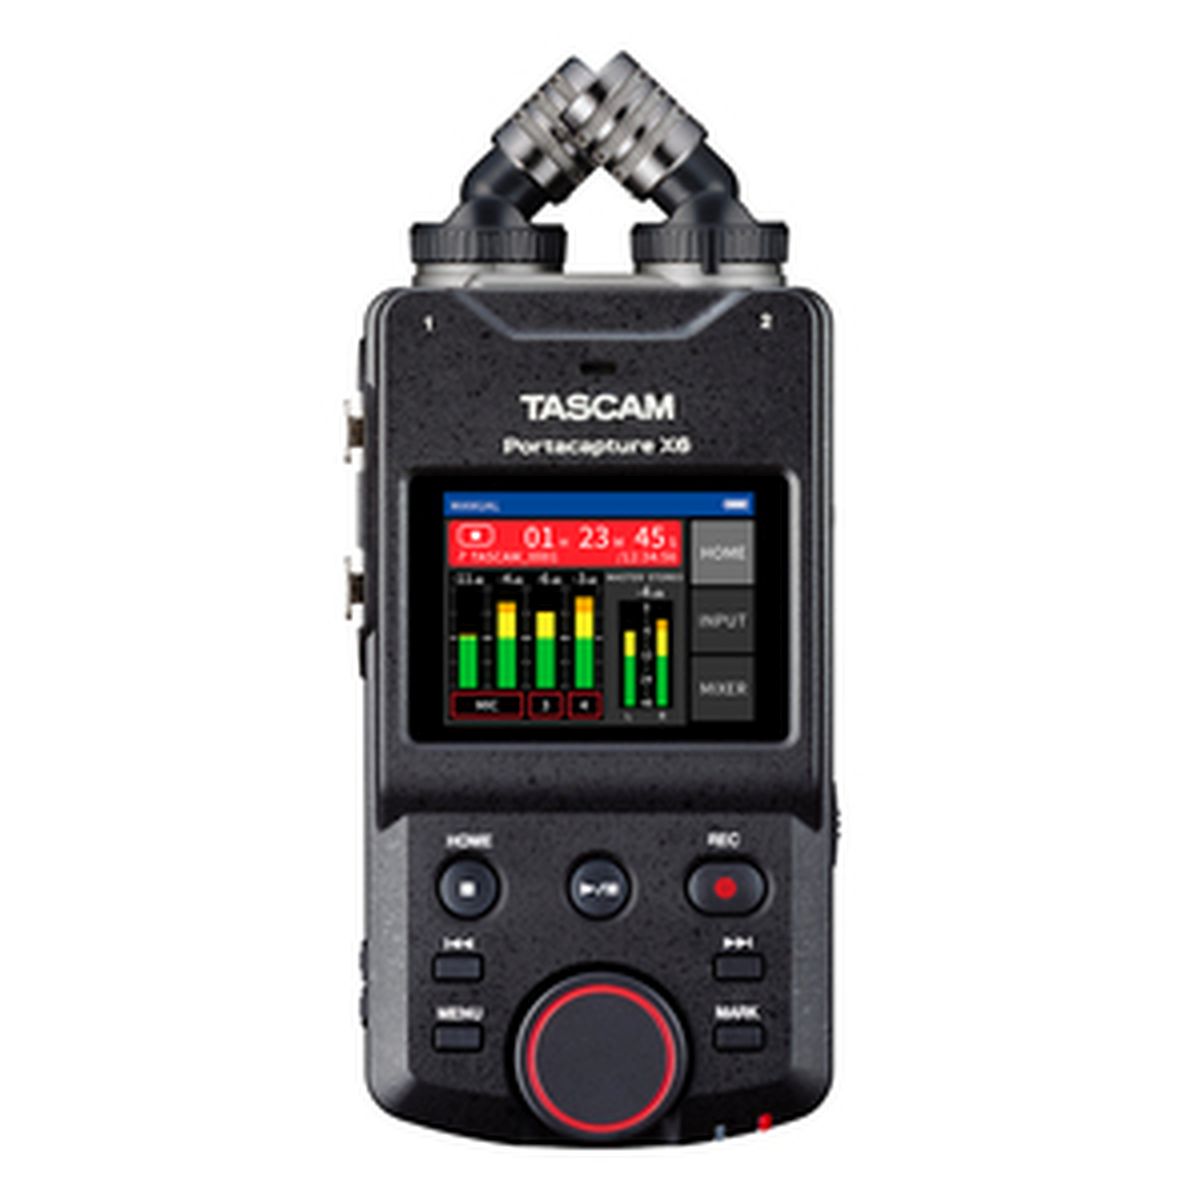 Tascam Portacapture X6 Audiorecorder